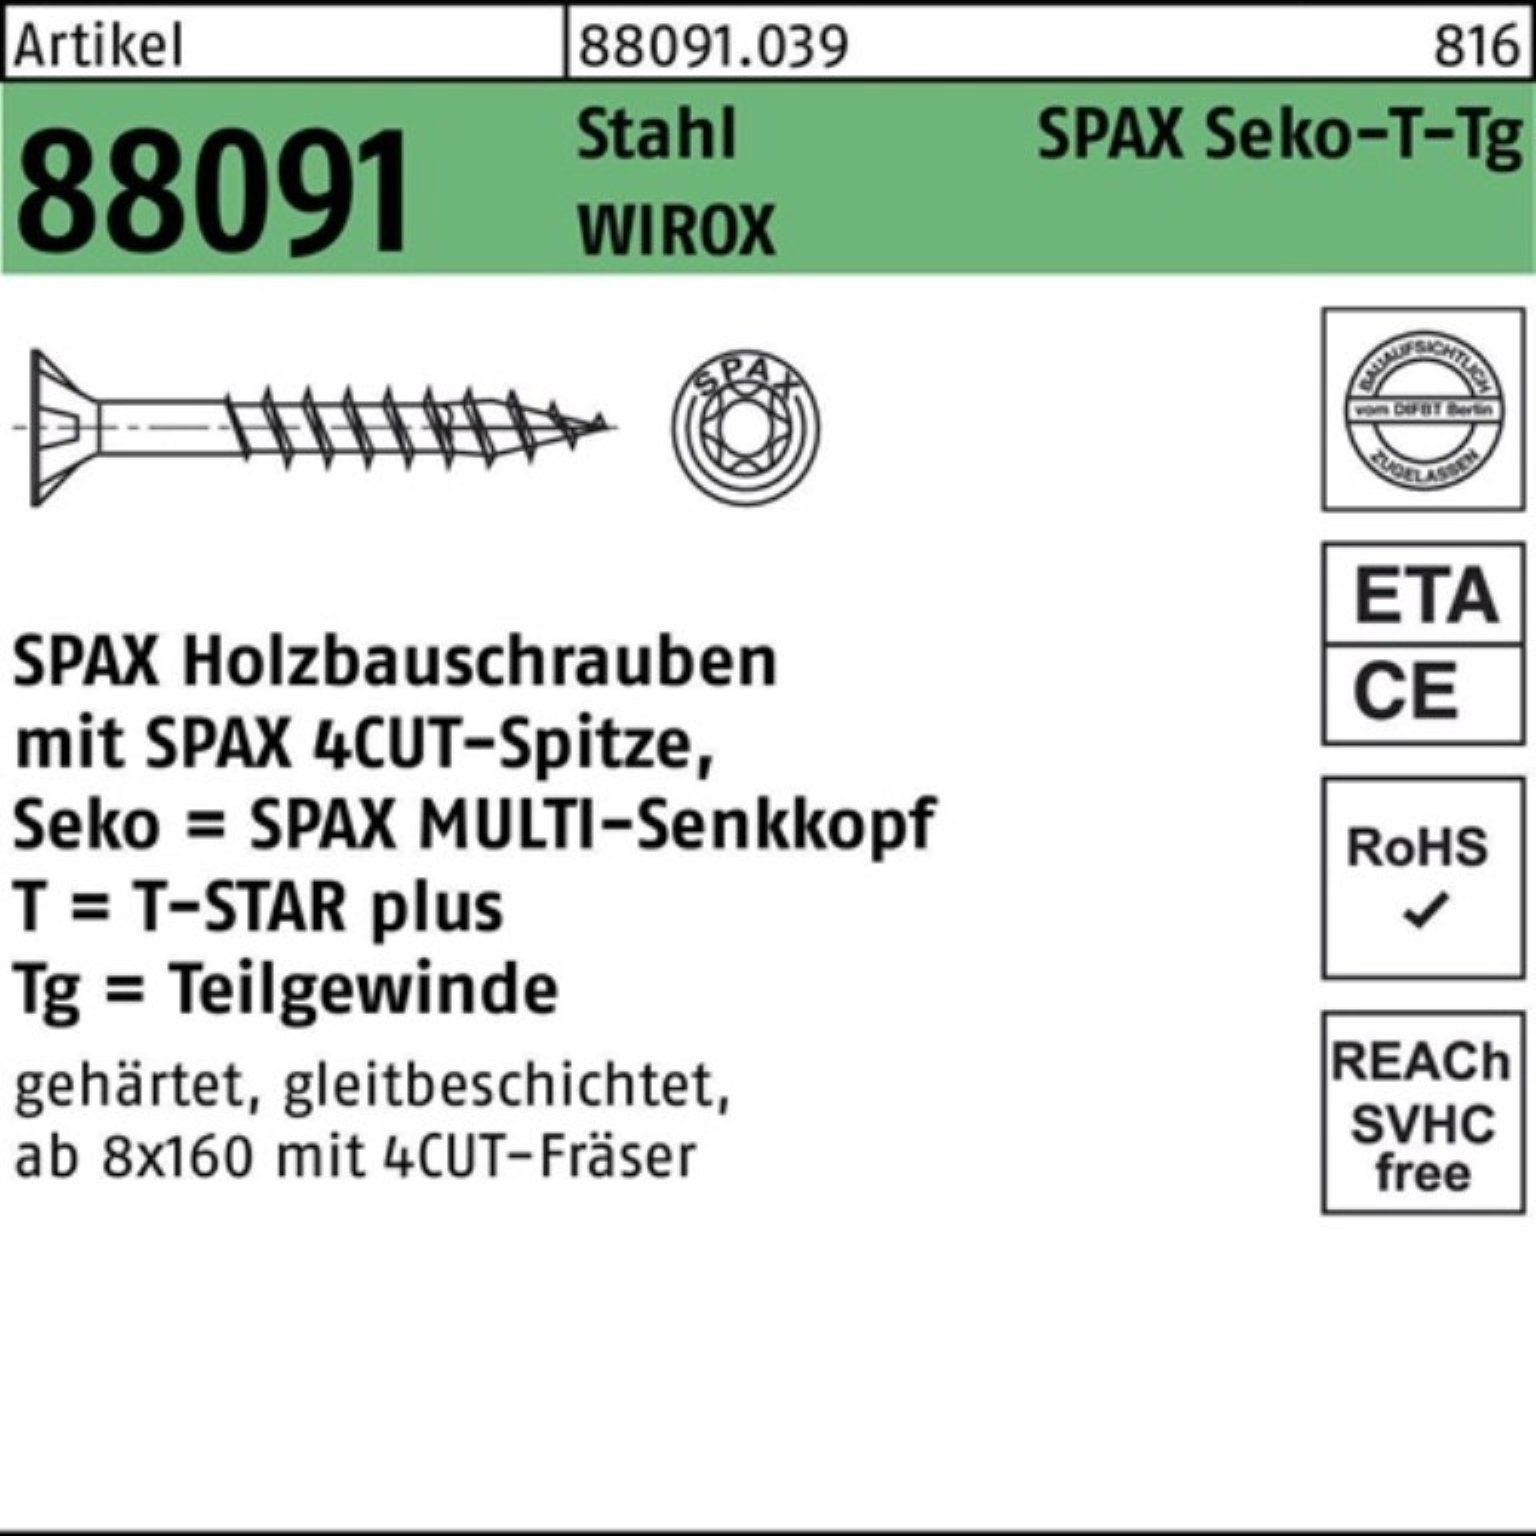 Schraube 100er Stahl SEKO/T-STAR WIROX SPAX 88091 TG Pack 200/80-T50 R 10x Schraube